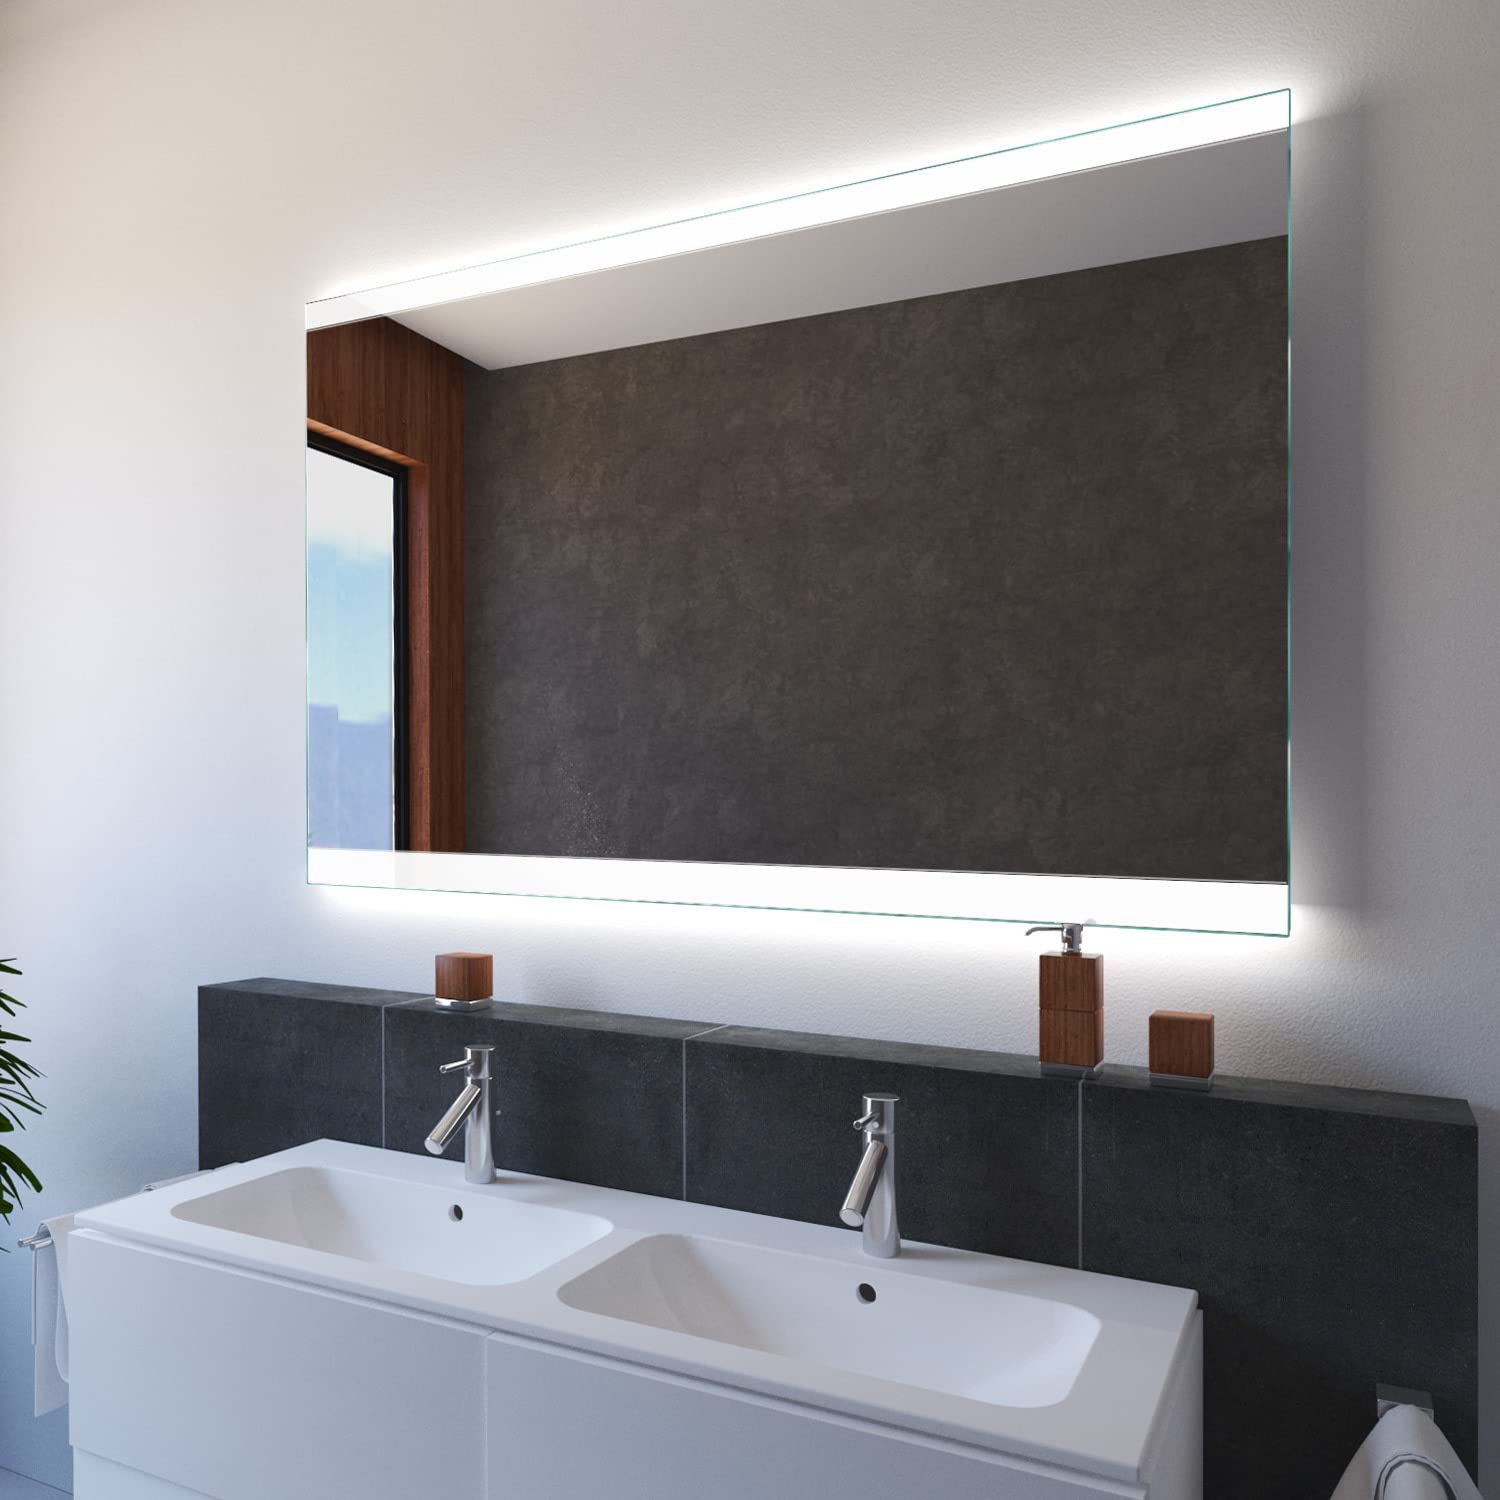 SARAR Wandspiegel mit LED-Beleuchtung 200x80cm Made in Germany Designo MA2510 Badspiegel Spiegel mit Beleuchtung Badezimmerspiegel nach-auf Maß